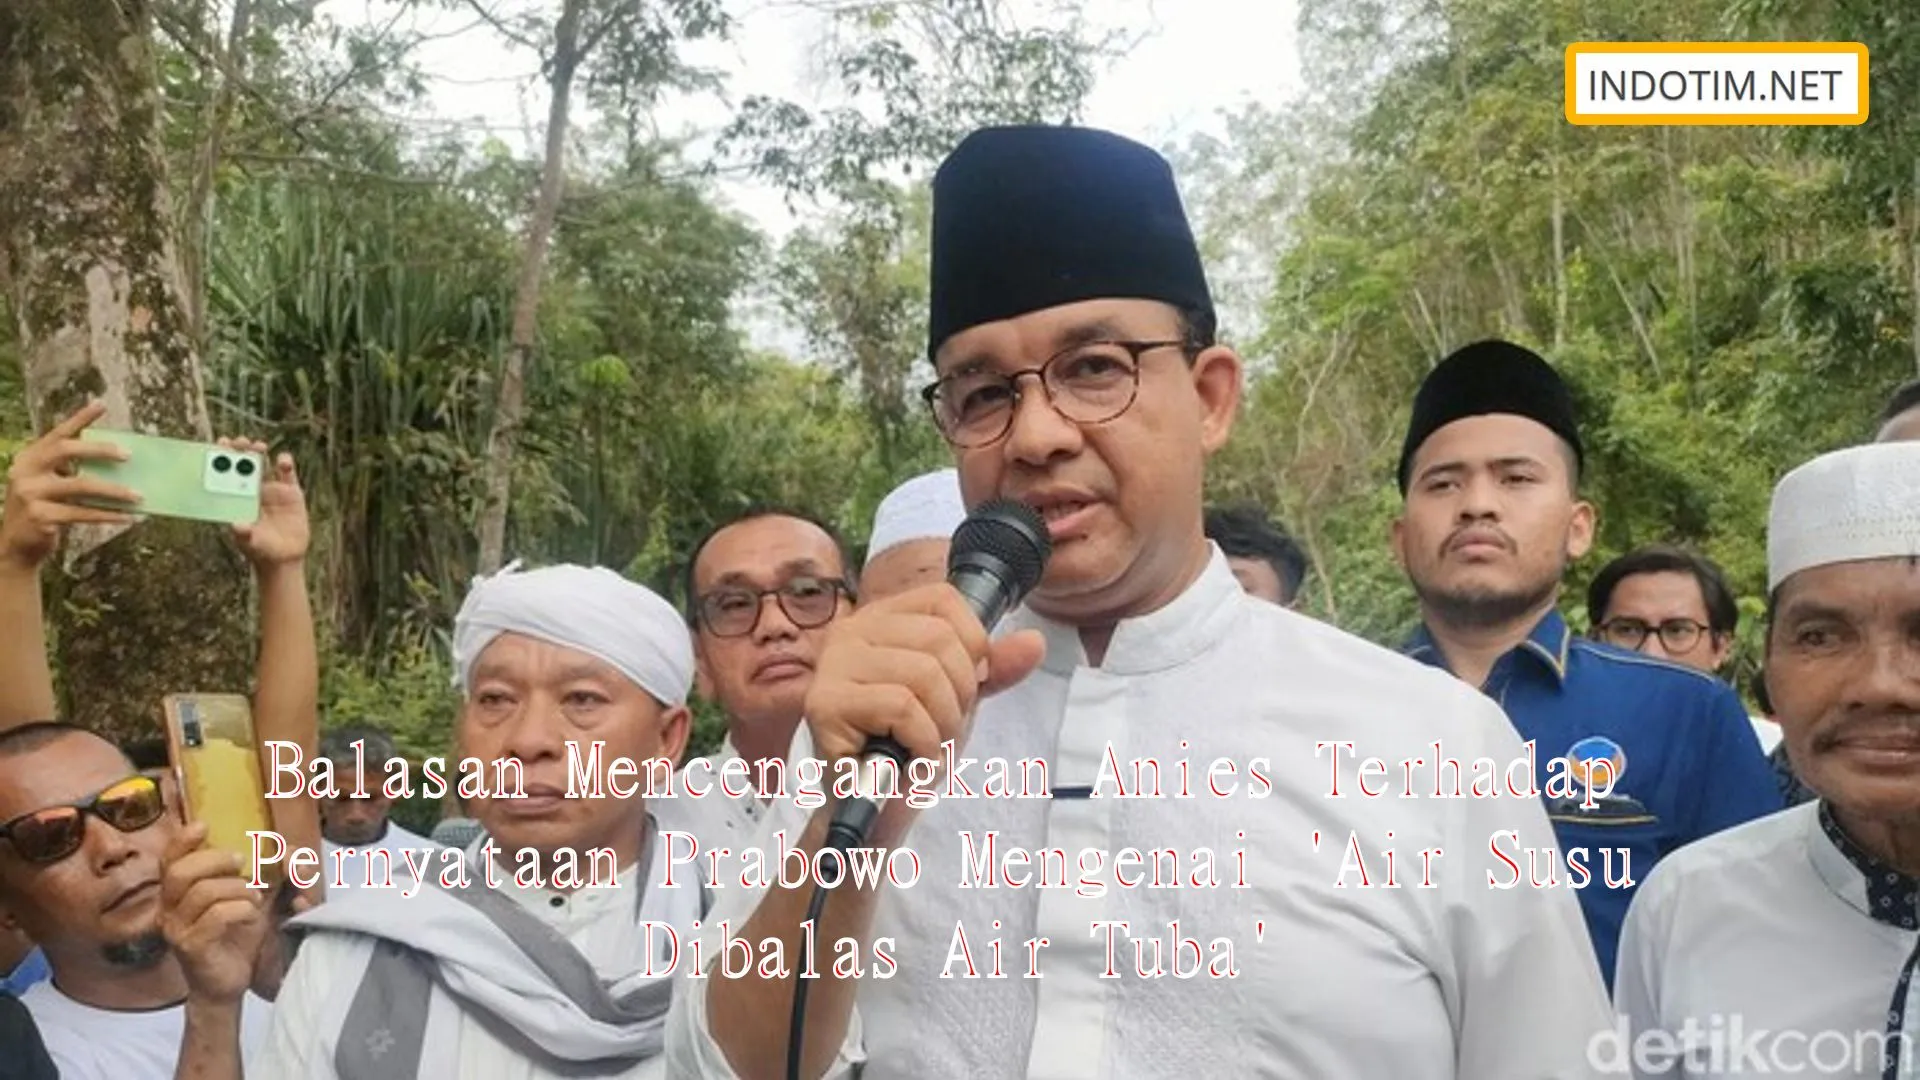 Balasan Mencengangkan Anies Terhadap Pernyataan Prabowo Mengenai 'Air Susu Dibalas Air Tuba'